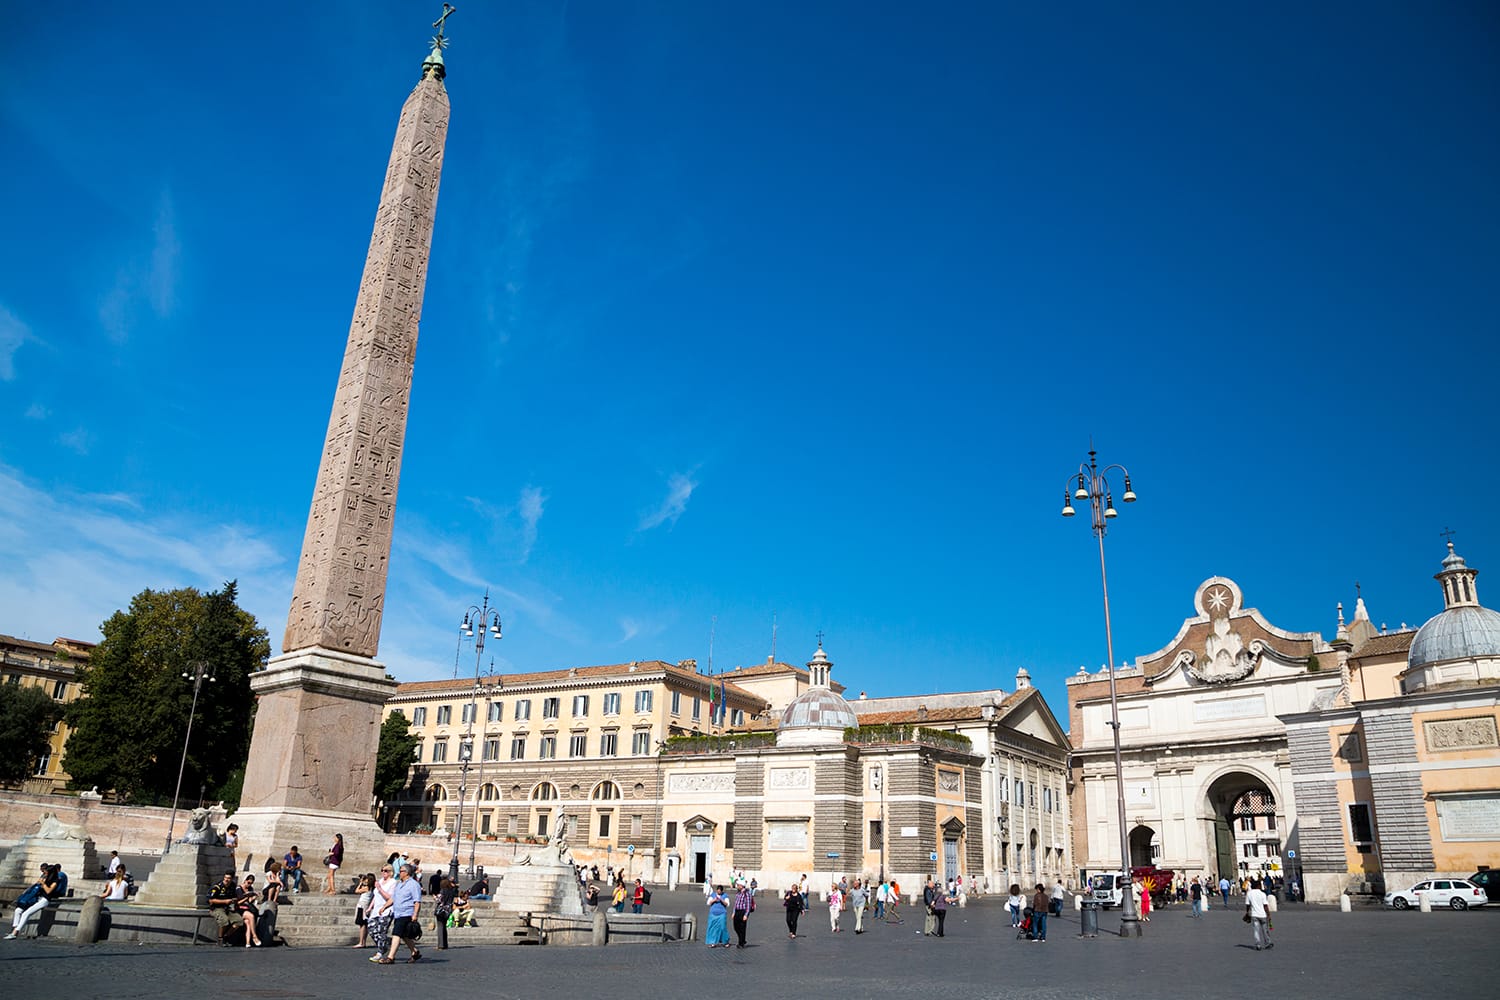 The Piazza del Popolo in Rome, Italy